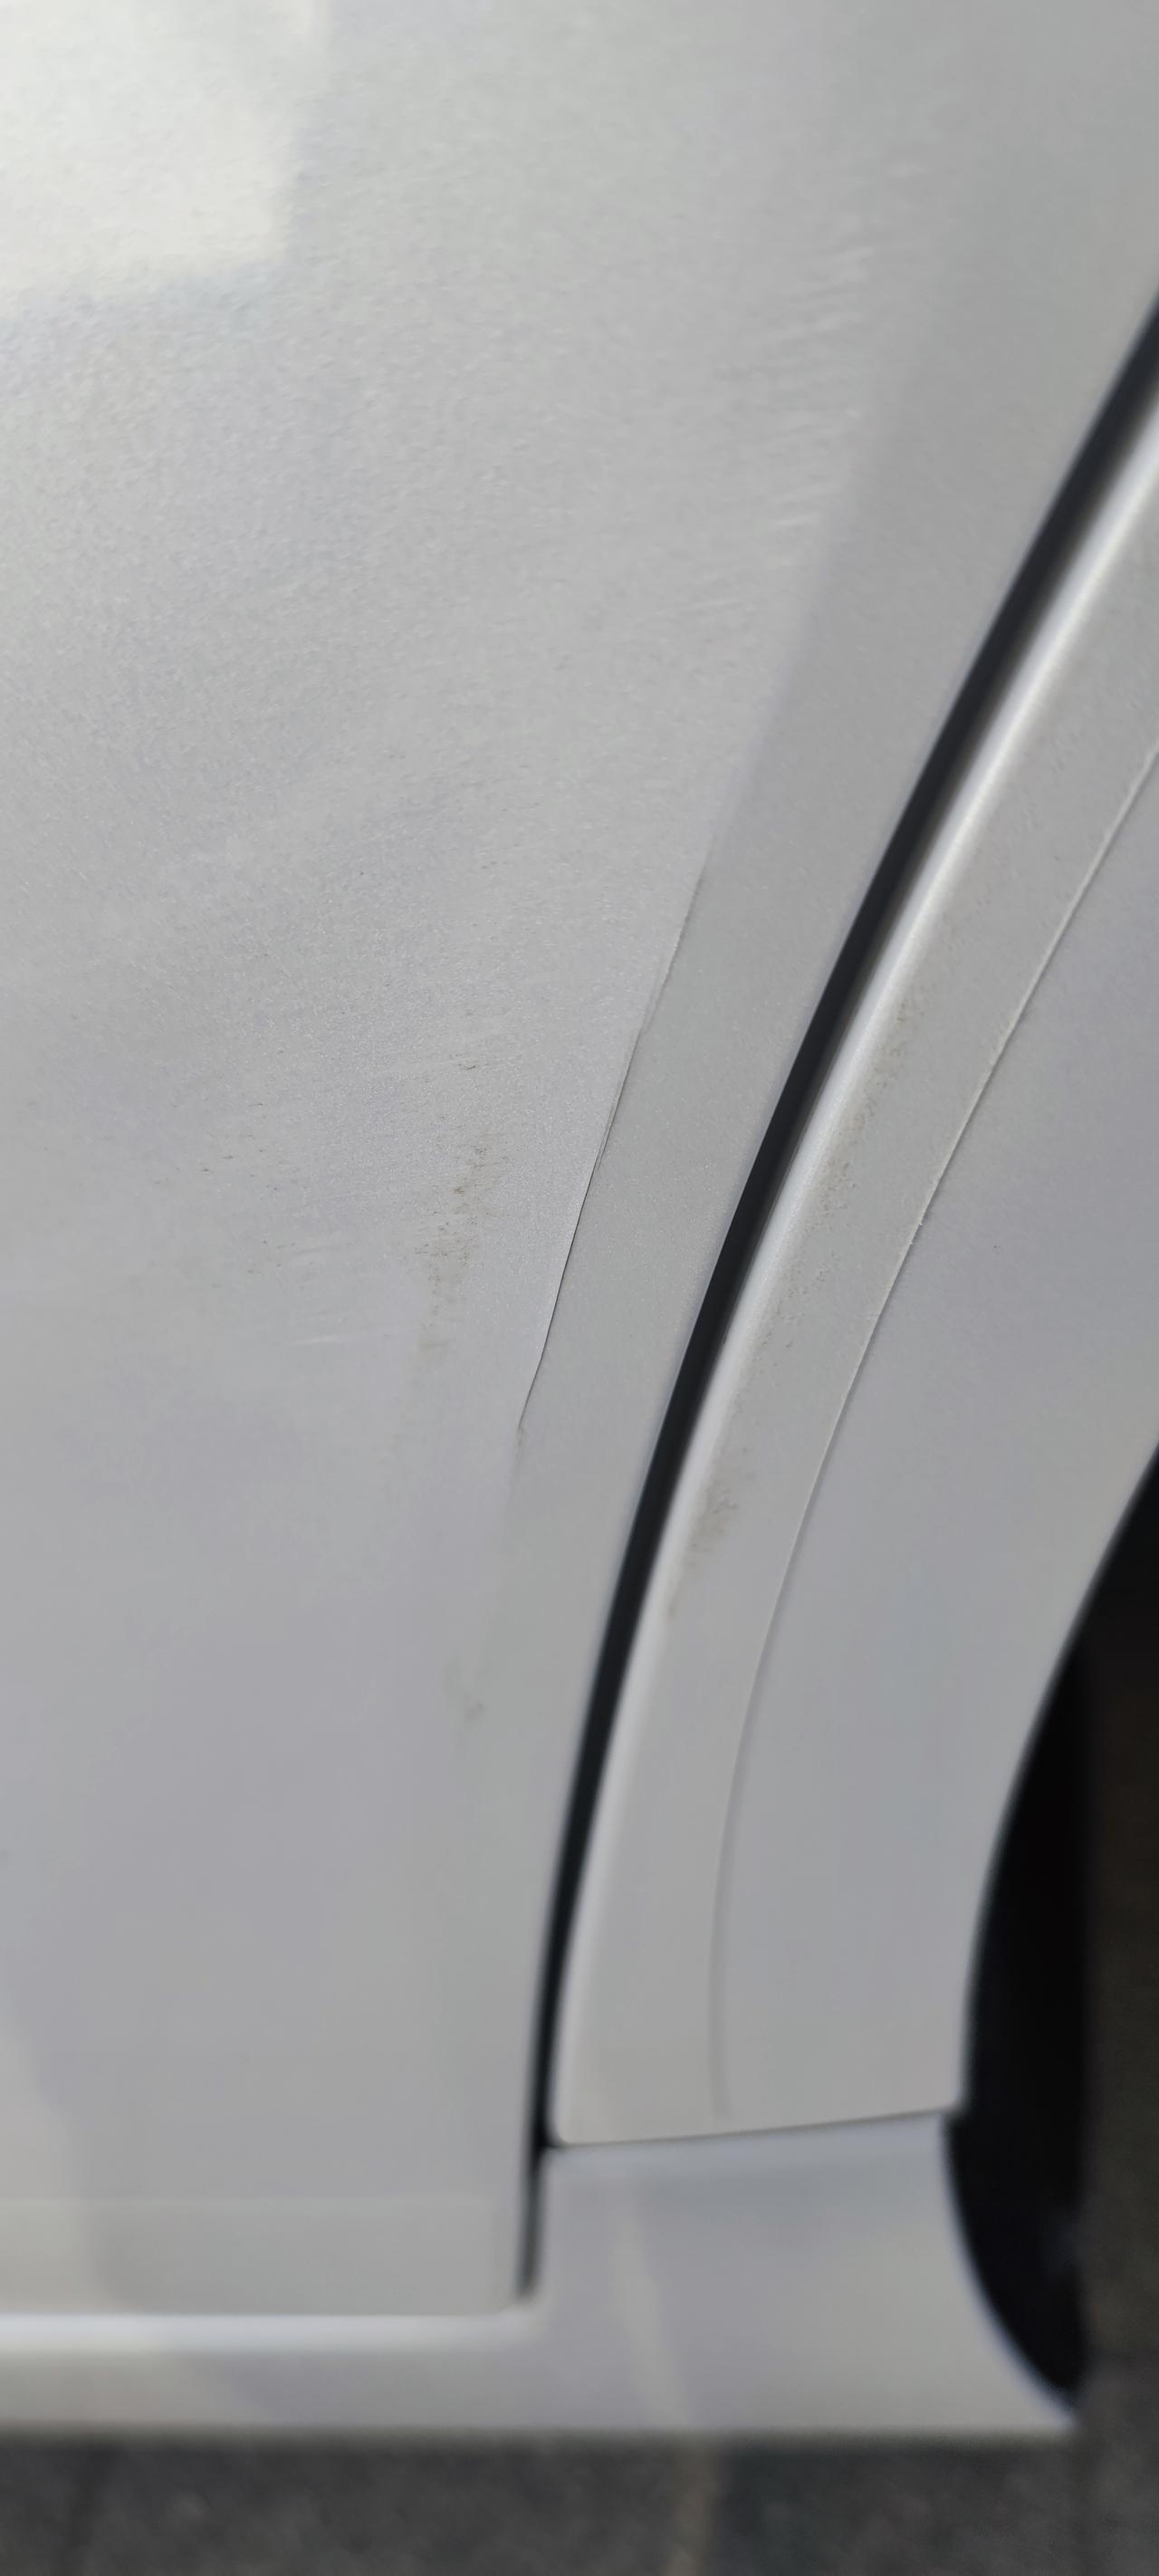 丰田亚洲龙 前几天怼了当时还是没裂纹的，洗车发现了位置是左后门上面。有必要去做补漆吗？不补漆会不会生锈两个